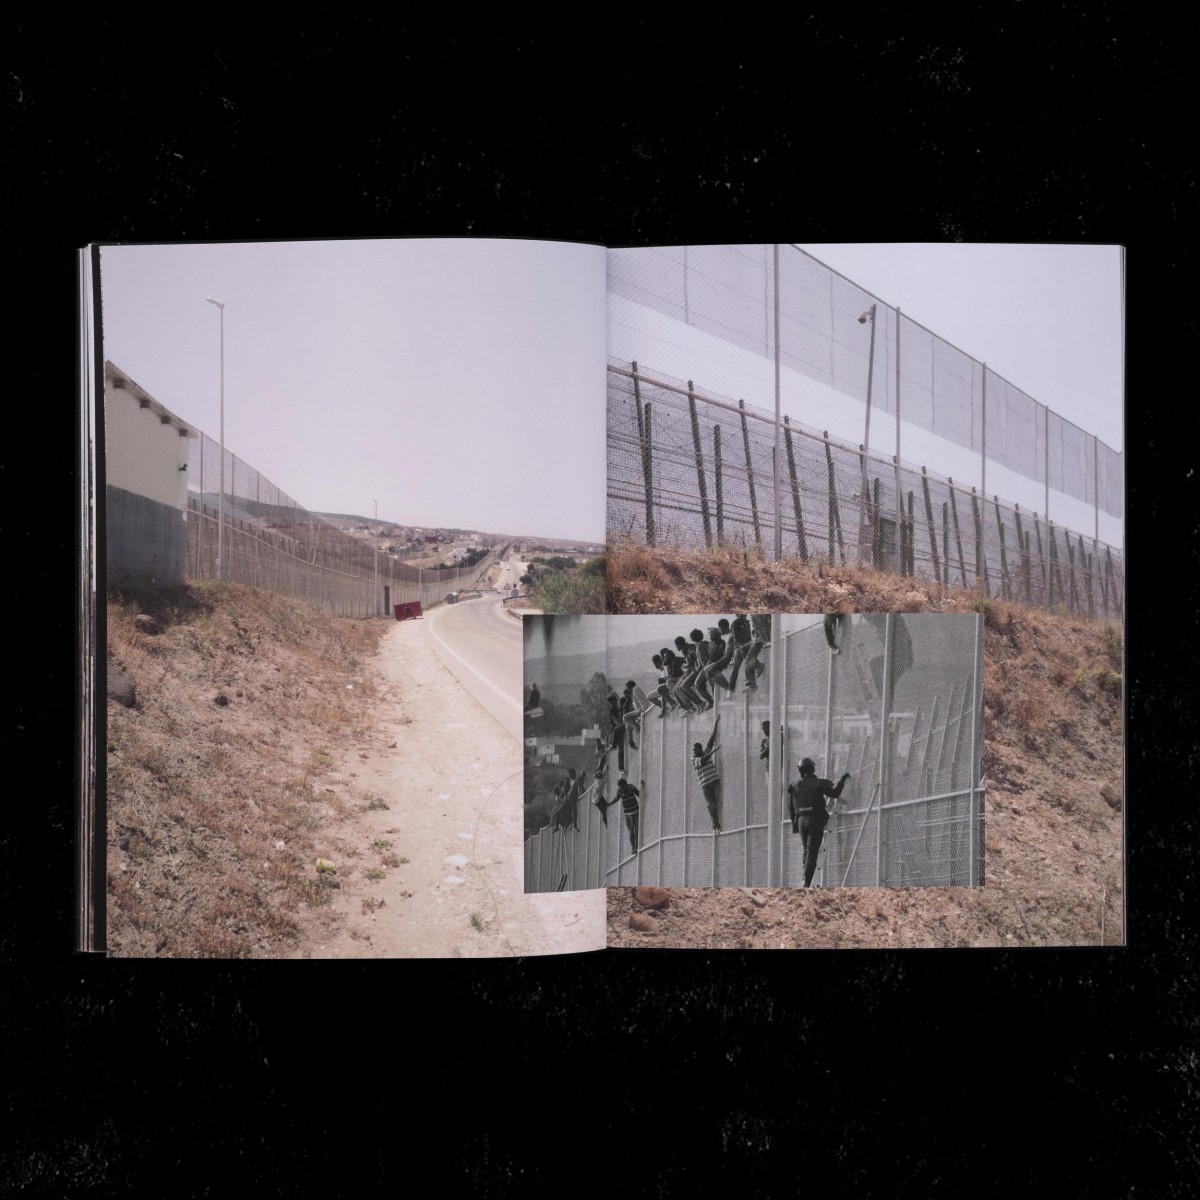 More than walls: Bordering the Strait of Gibraltar - Antonio Giráldez López